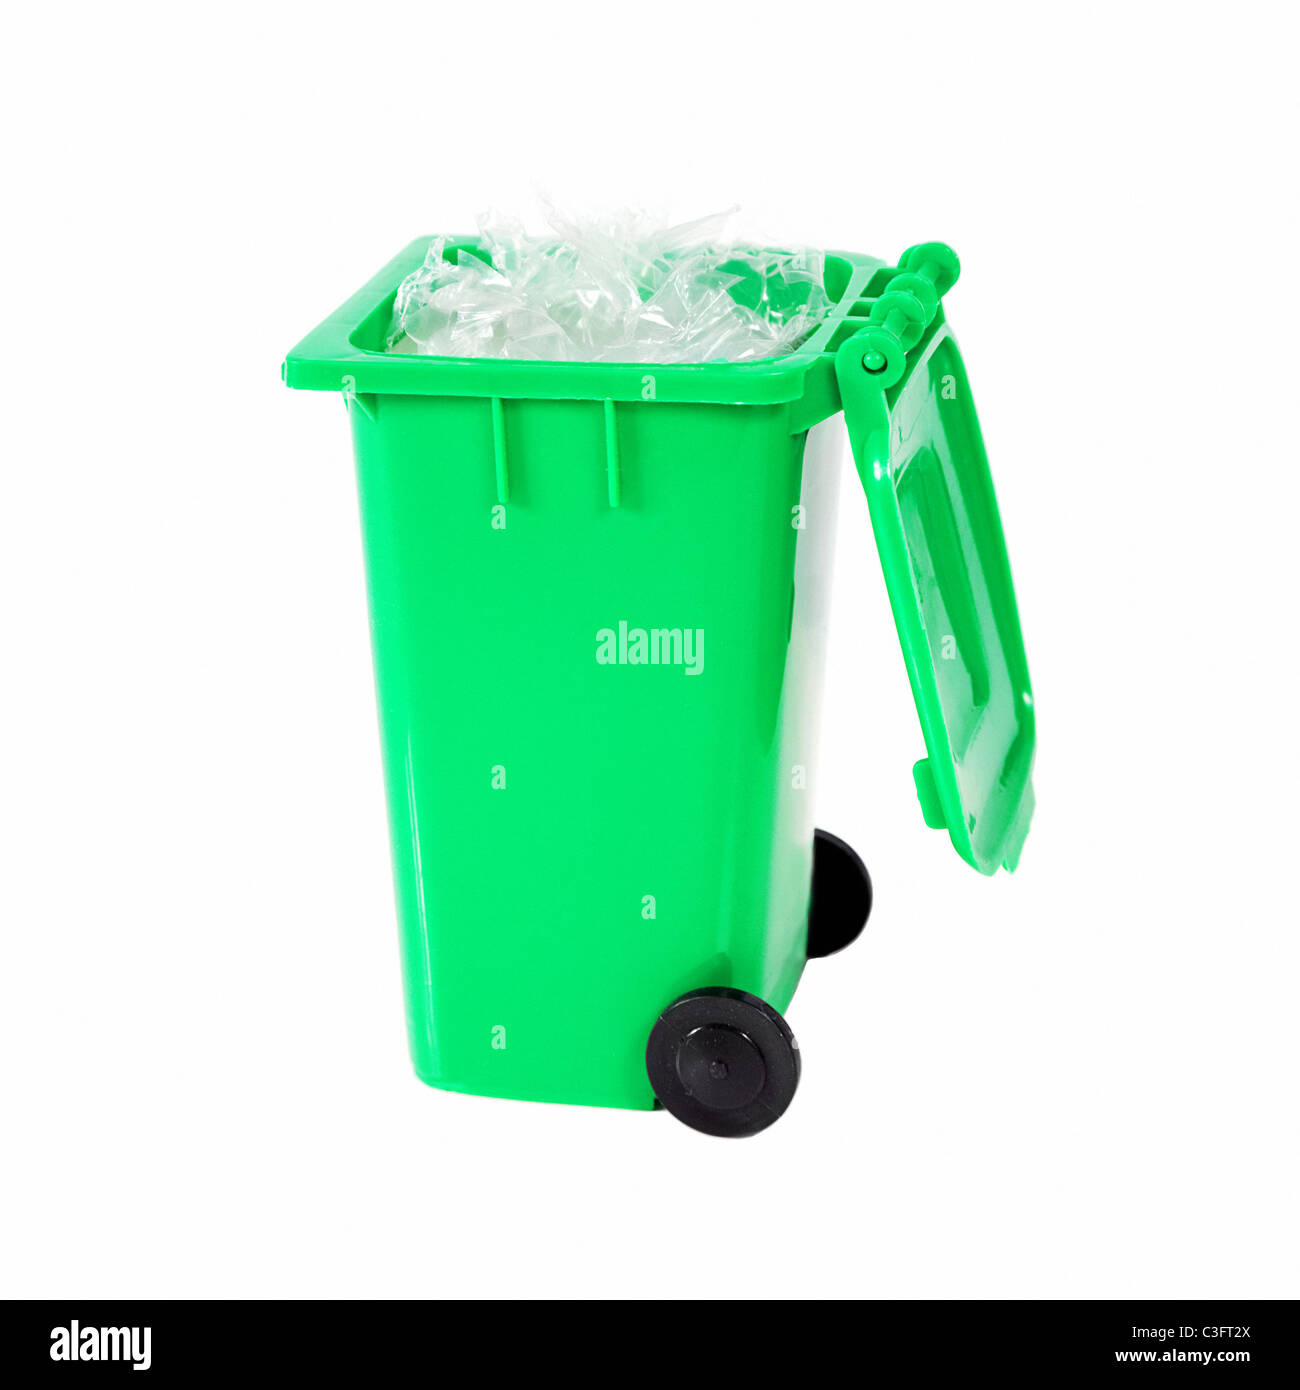 Bac de recyclage vert plein avec du plastique Banque D'Images